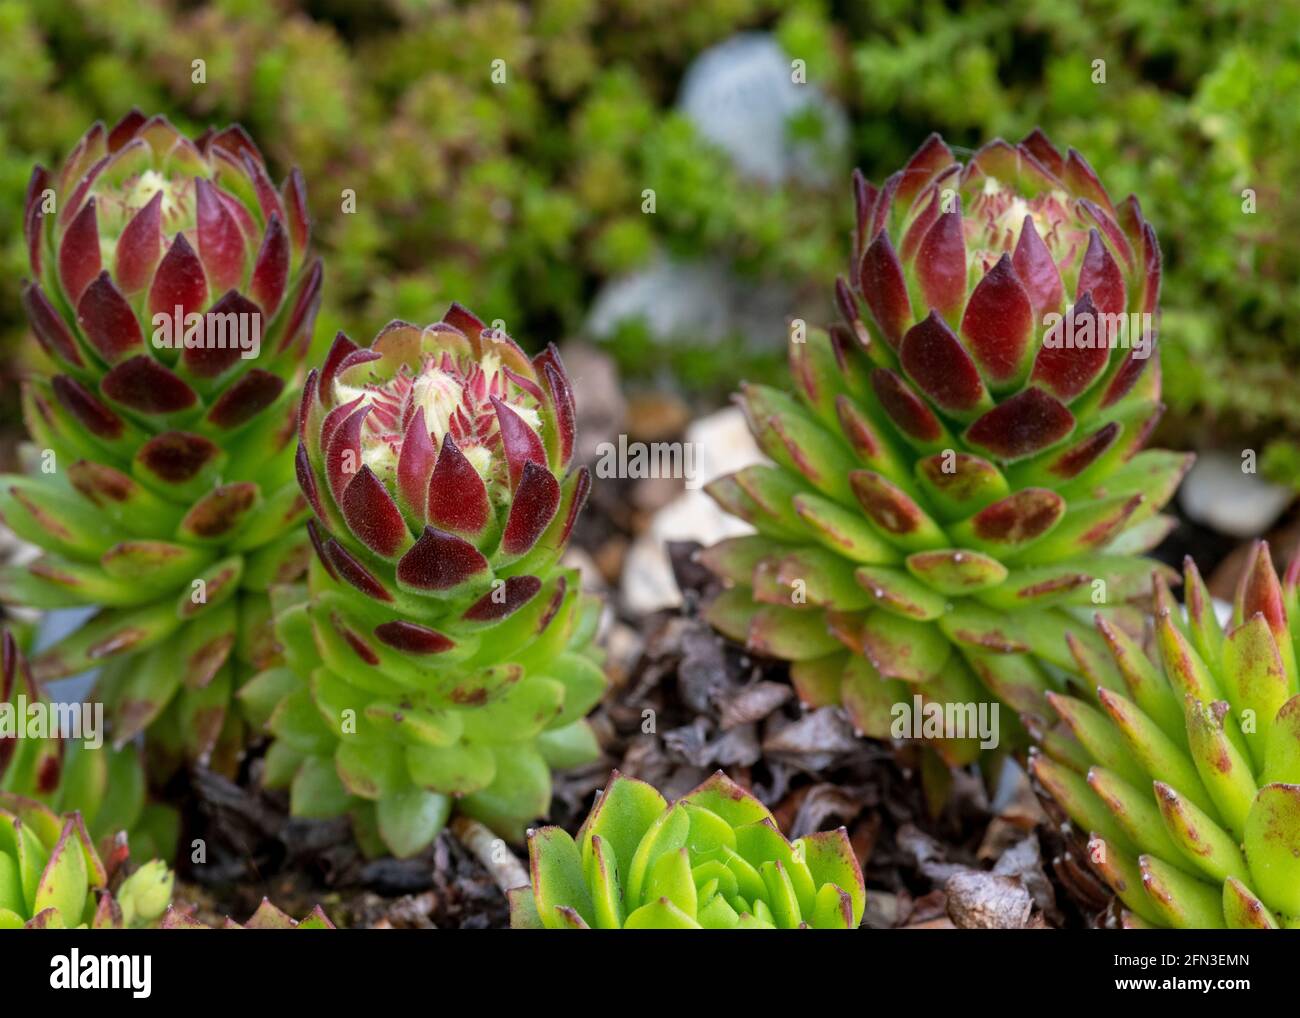 plante alpine rouge et verte succulente sempervivum dans une rocarie de jardin, marco a tourné le focus sur le fond flou de la forêt pour aider à copier l'espace Banque D'Images